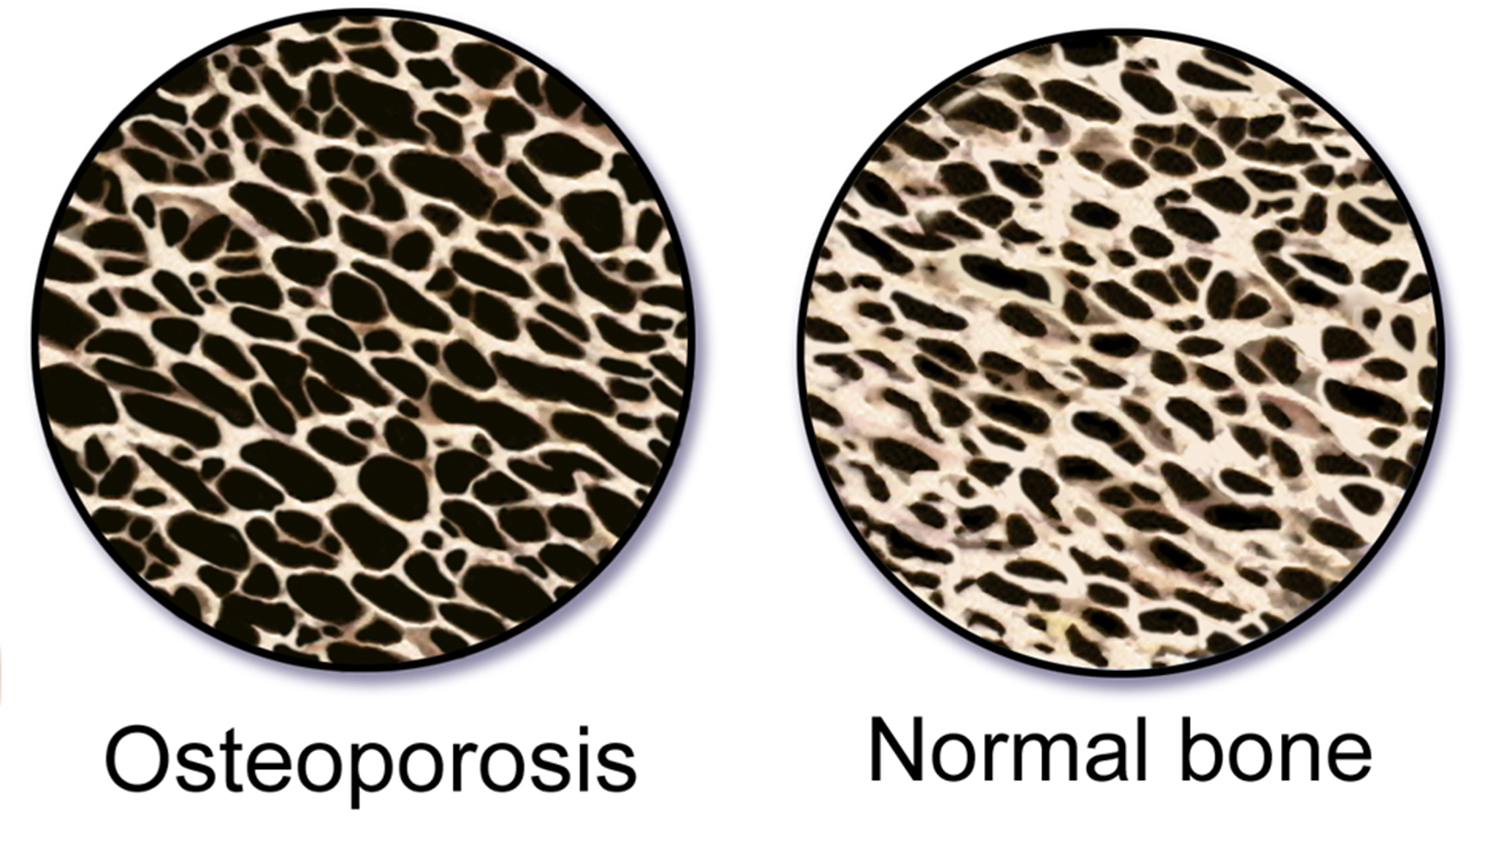 骨质疏松症与正常骨骼的对比图